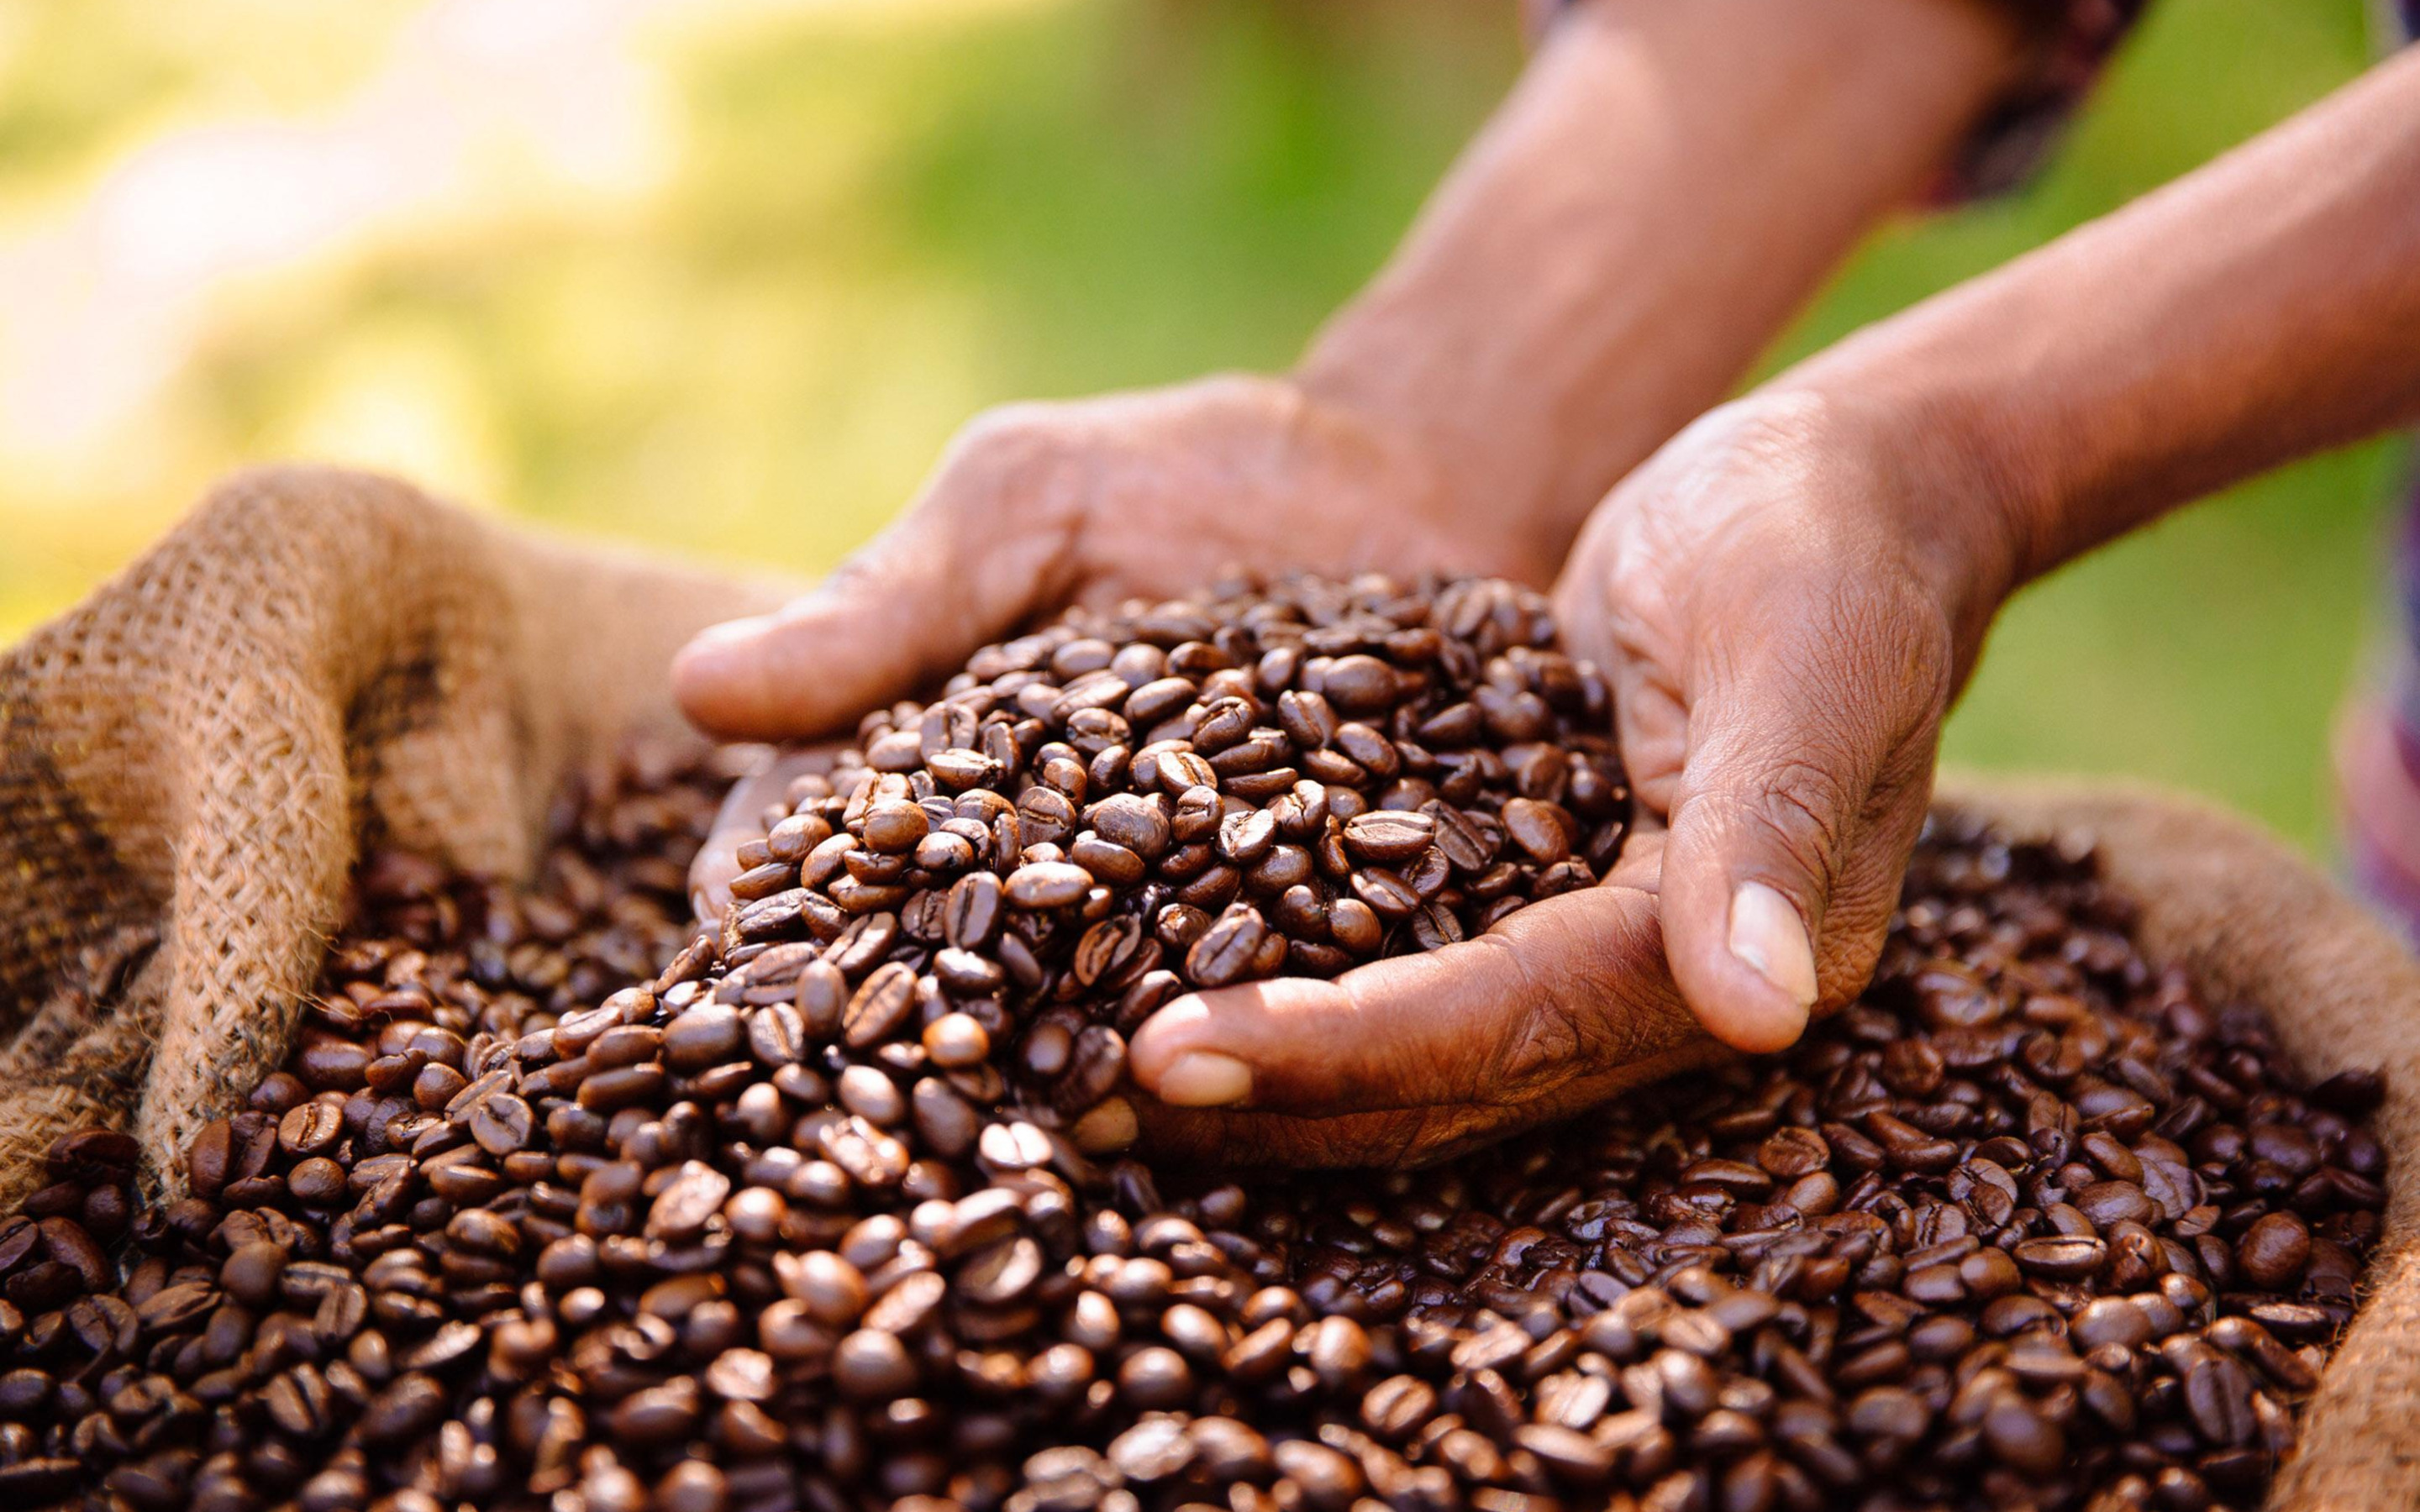 Coffee is grown. Плантации кофе в Бразилии. Кофейные зерна. Кофейные плантации. Сбор зерен кофе.